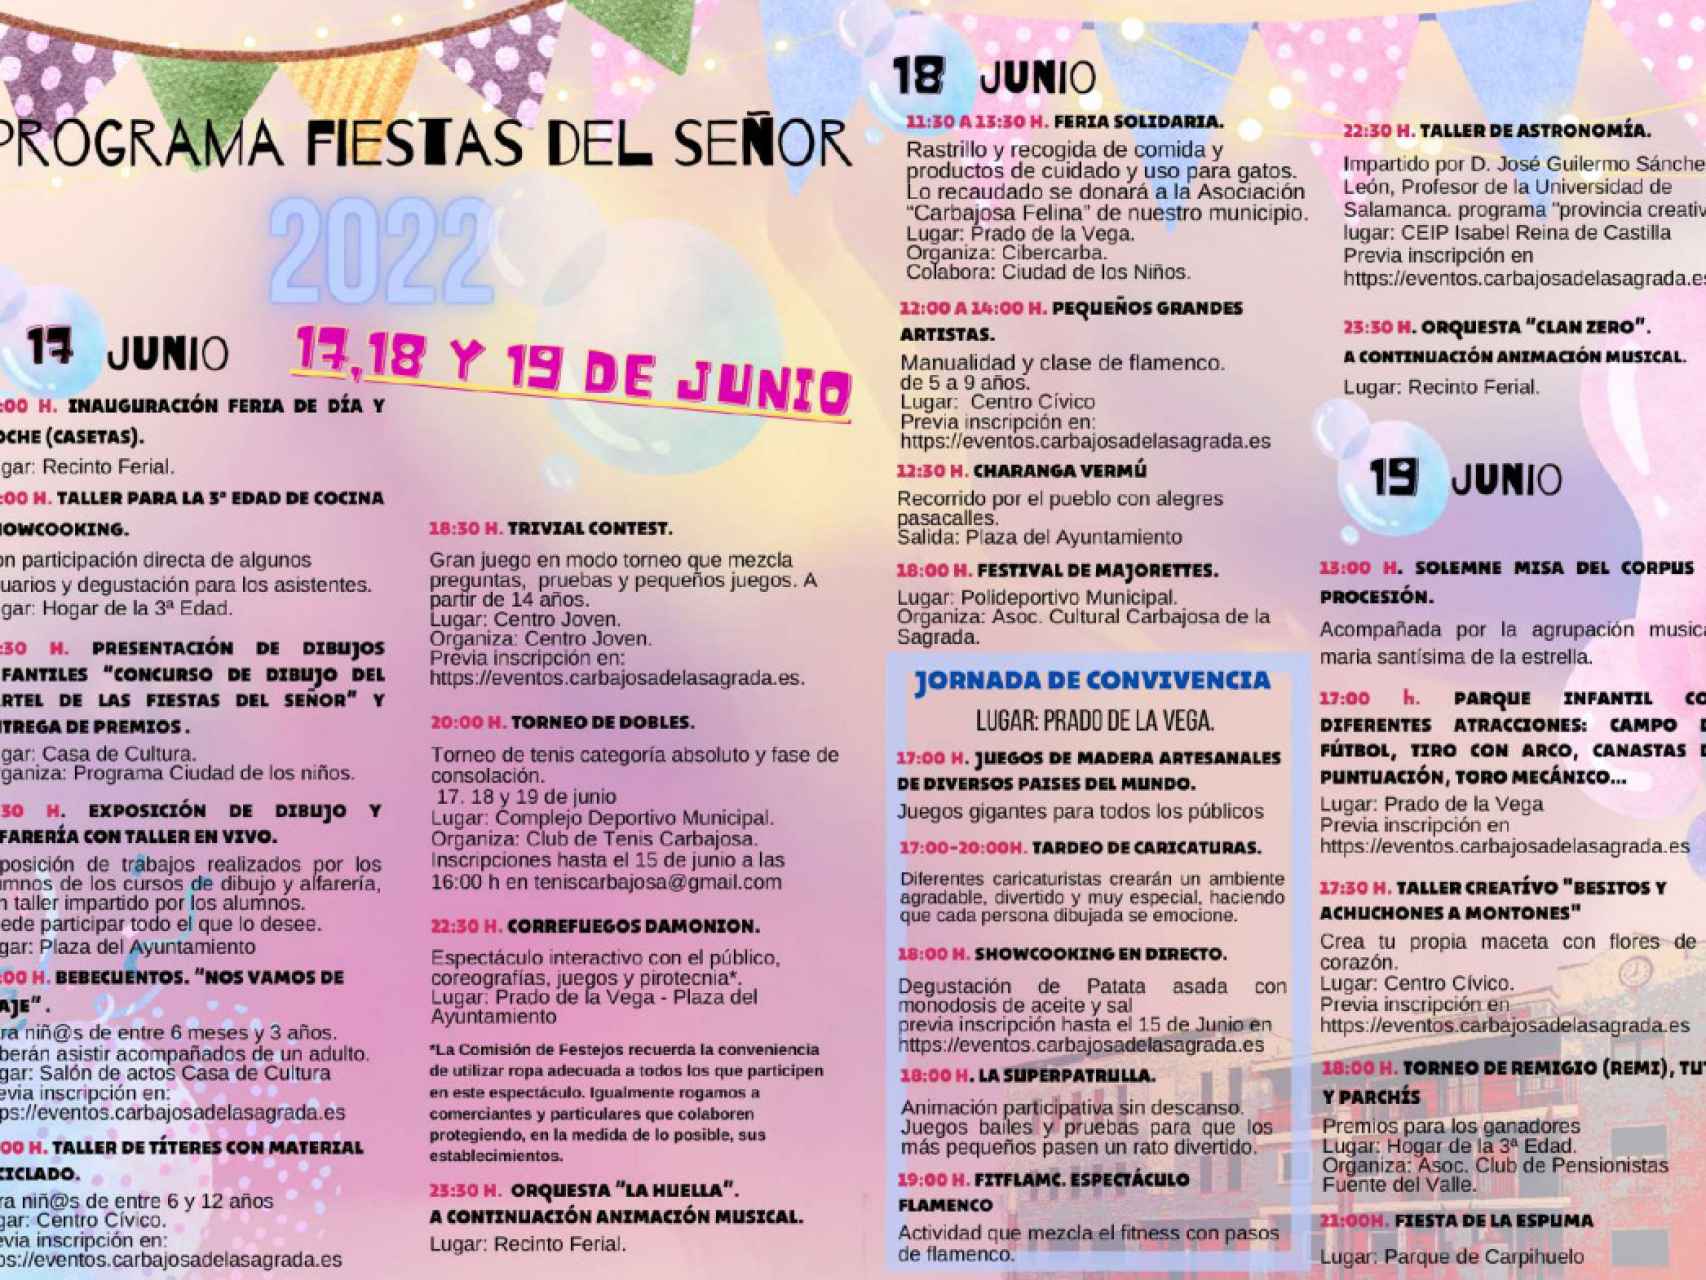 Programa completo de las fiestas de Carbajosa de la Sagrada.